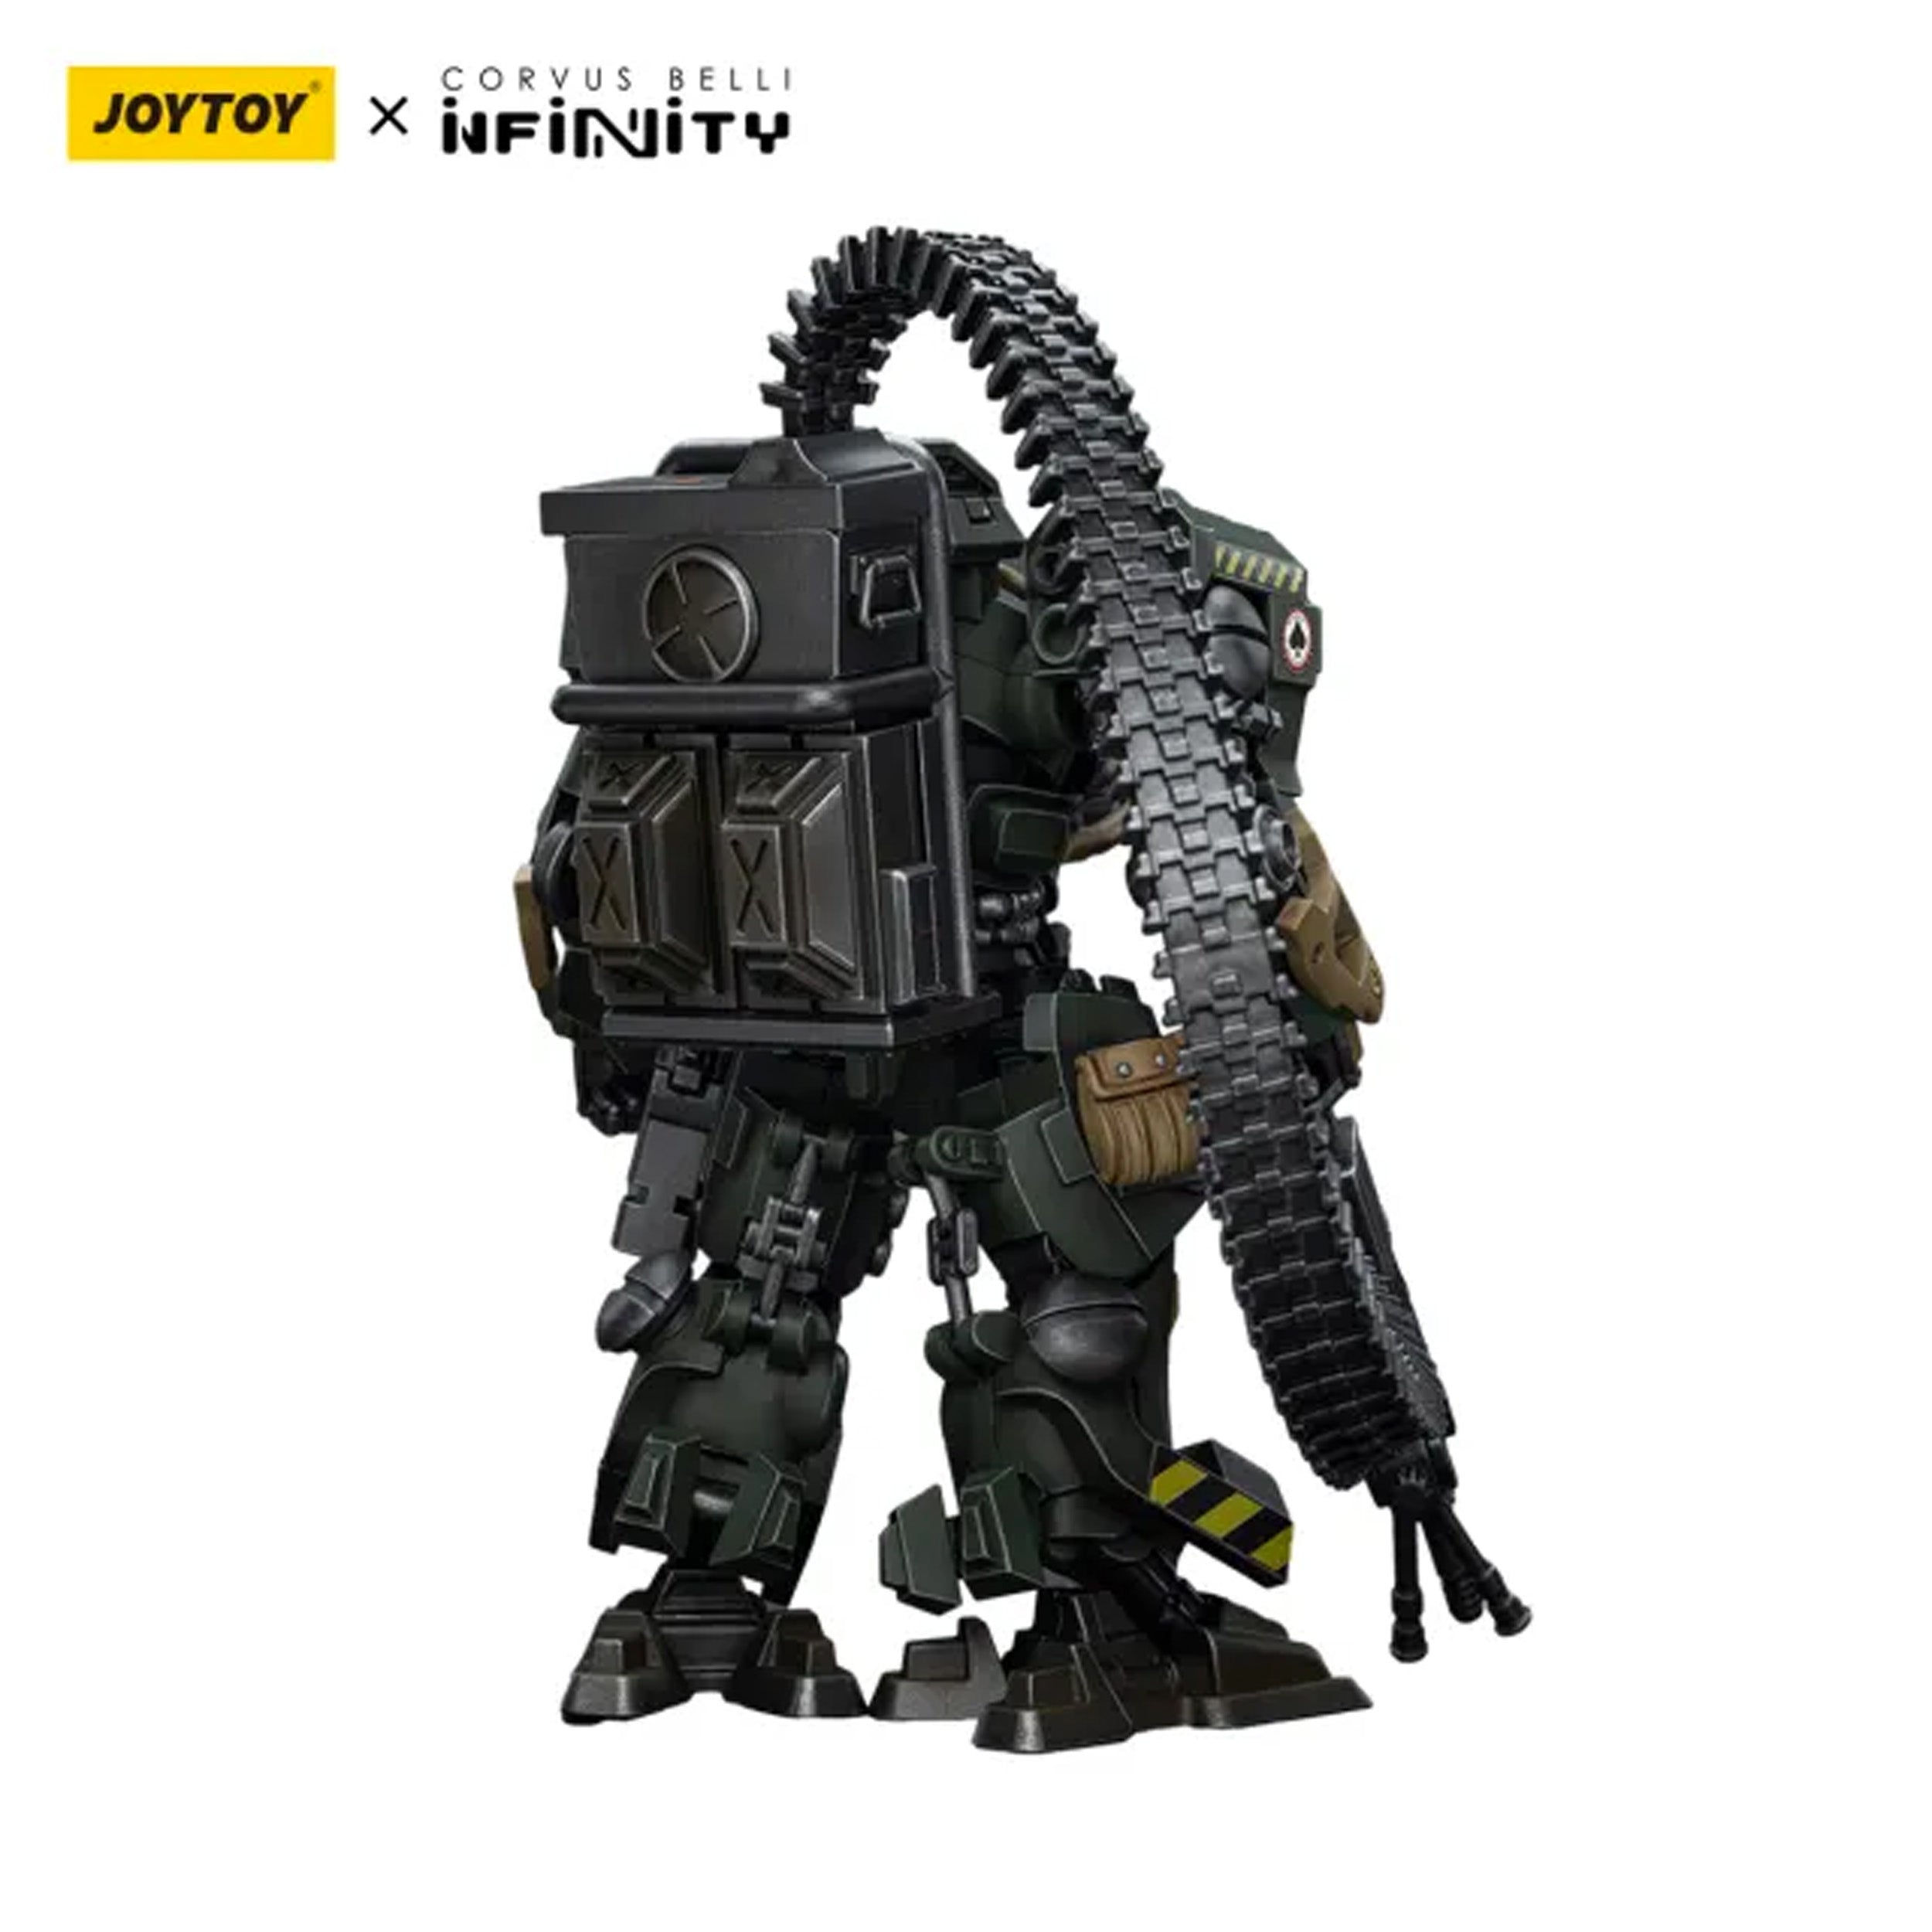 Joy Toy - JT9756 - Infinity (Corvus Belli) - Ariadna - Blackjacks, 10th Heavy Ranger Bat. (AP HMG) (1/18 Scale) - Marvelous Toys